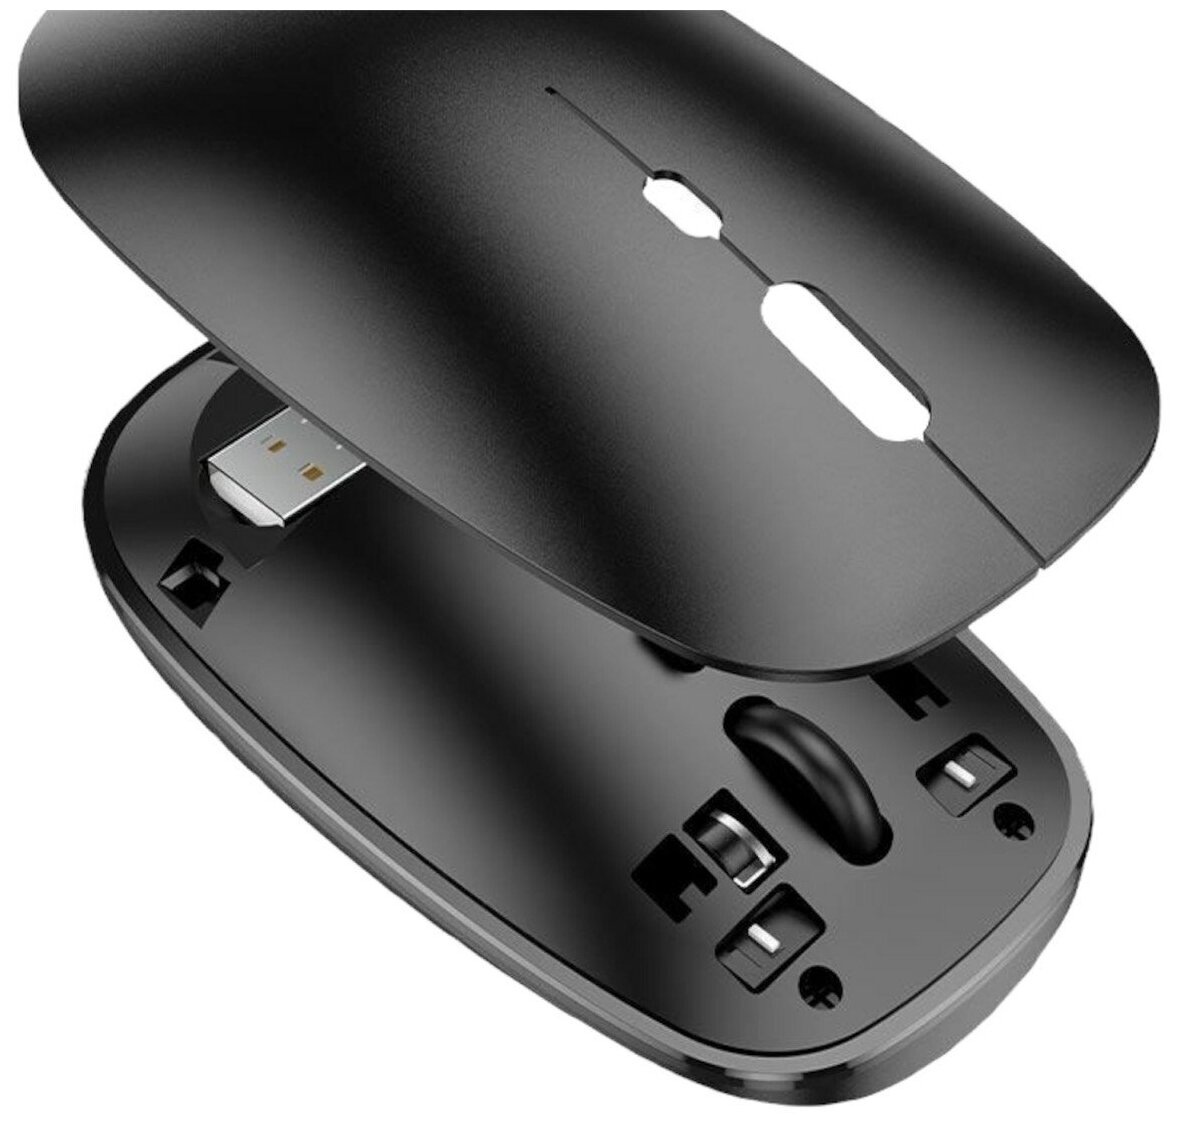 Беспроводная мышь компьютерная / Business wireless mouse / Bluetooth мышка для ноутбука / Черная